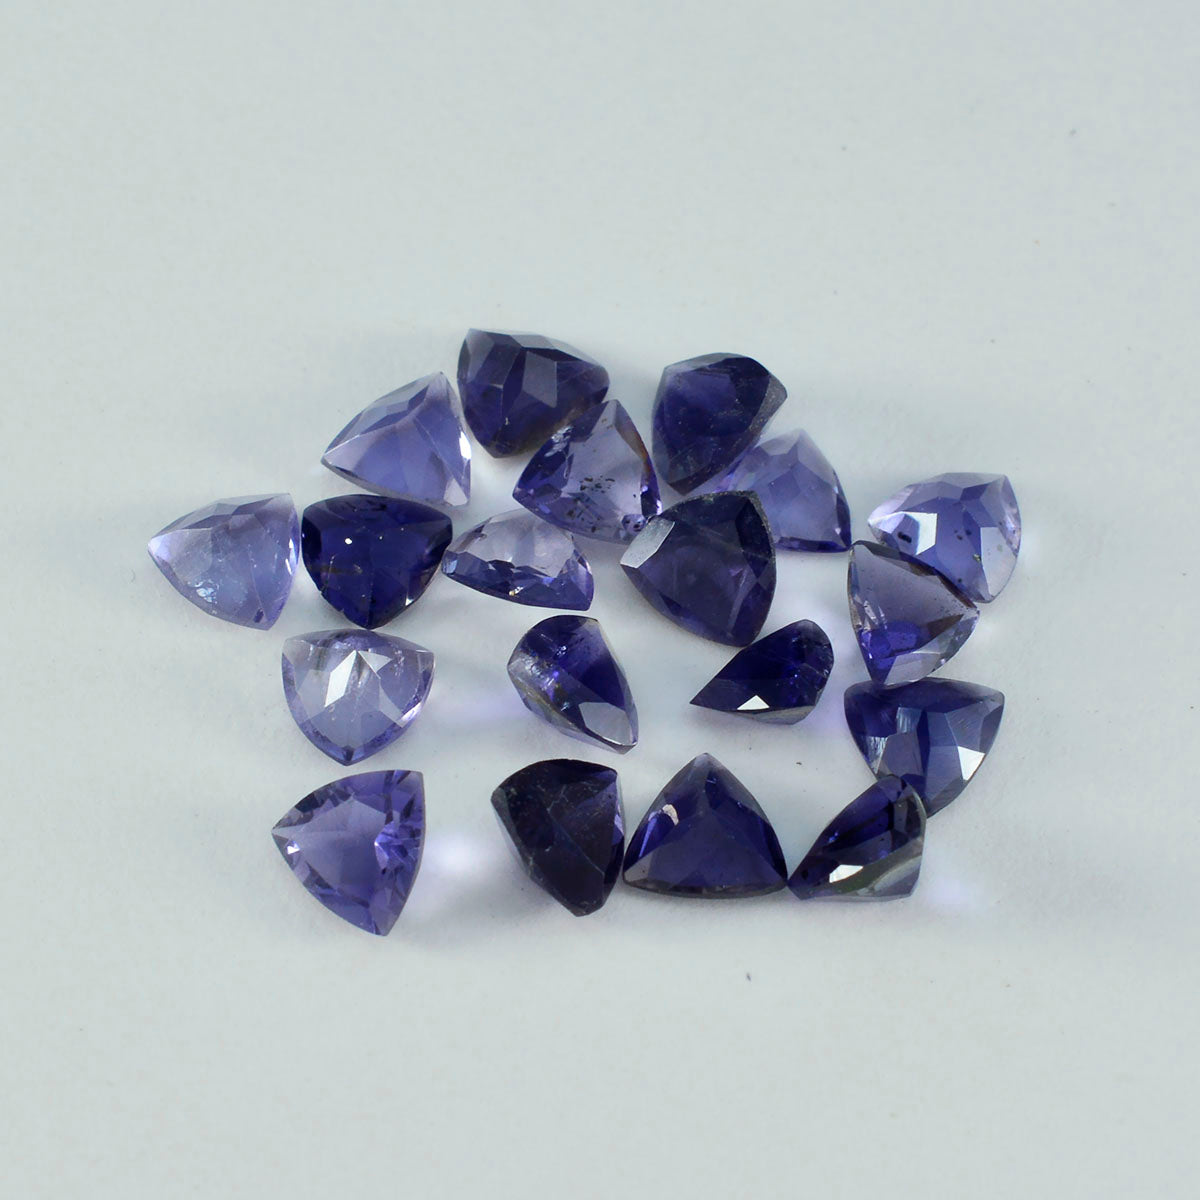 Riyogems 1 pièce d'iolite bleue à facettes 7x7mm en forme de trillion, pierre précieuse en vrac de jolie qualité